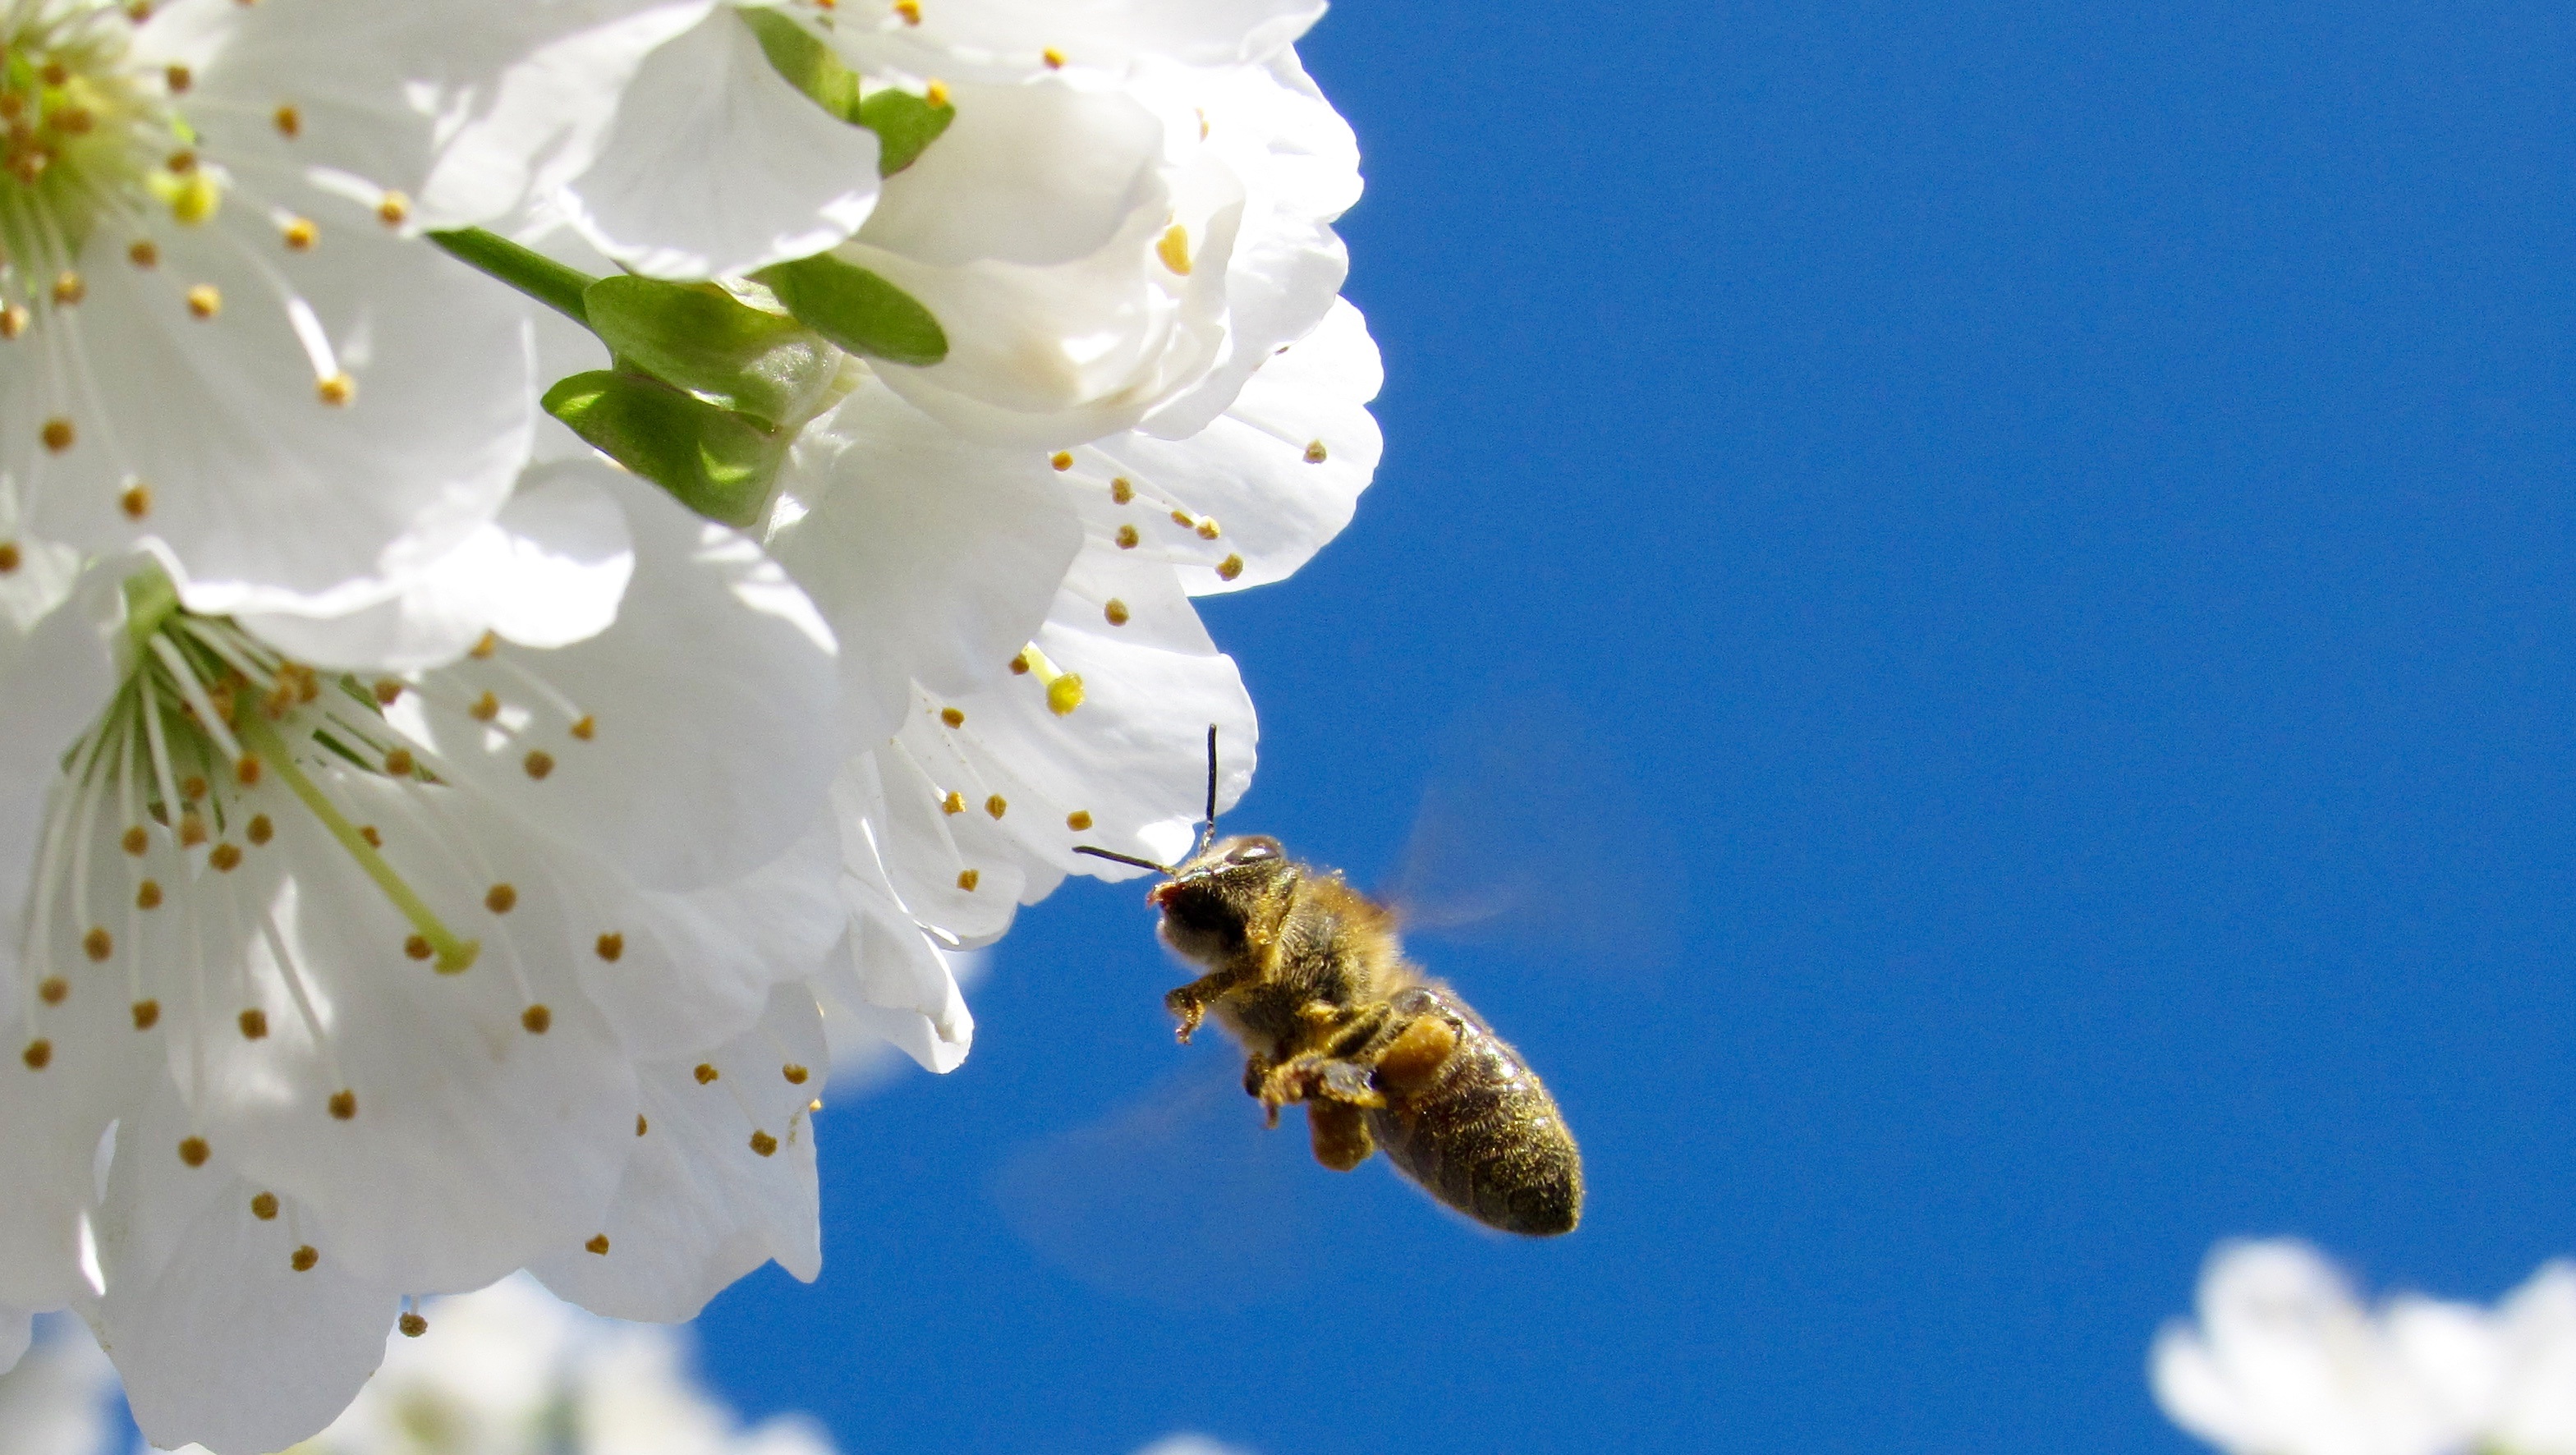 黄蜂为白色花朵授粉